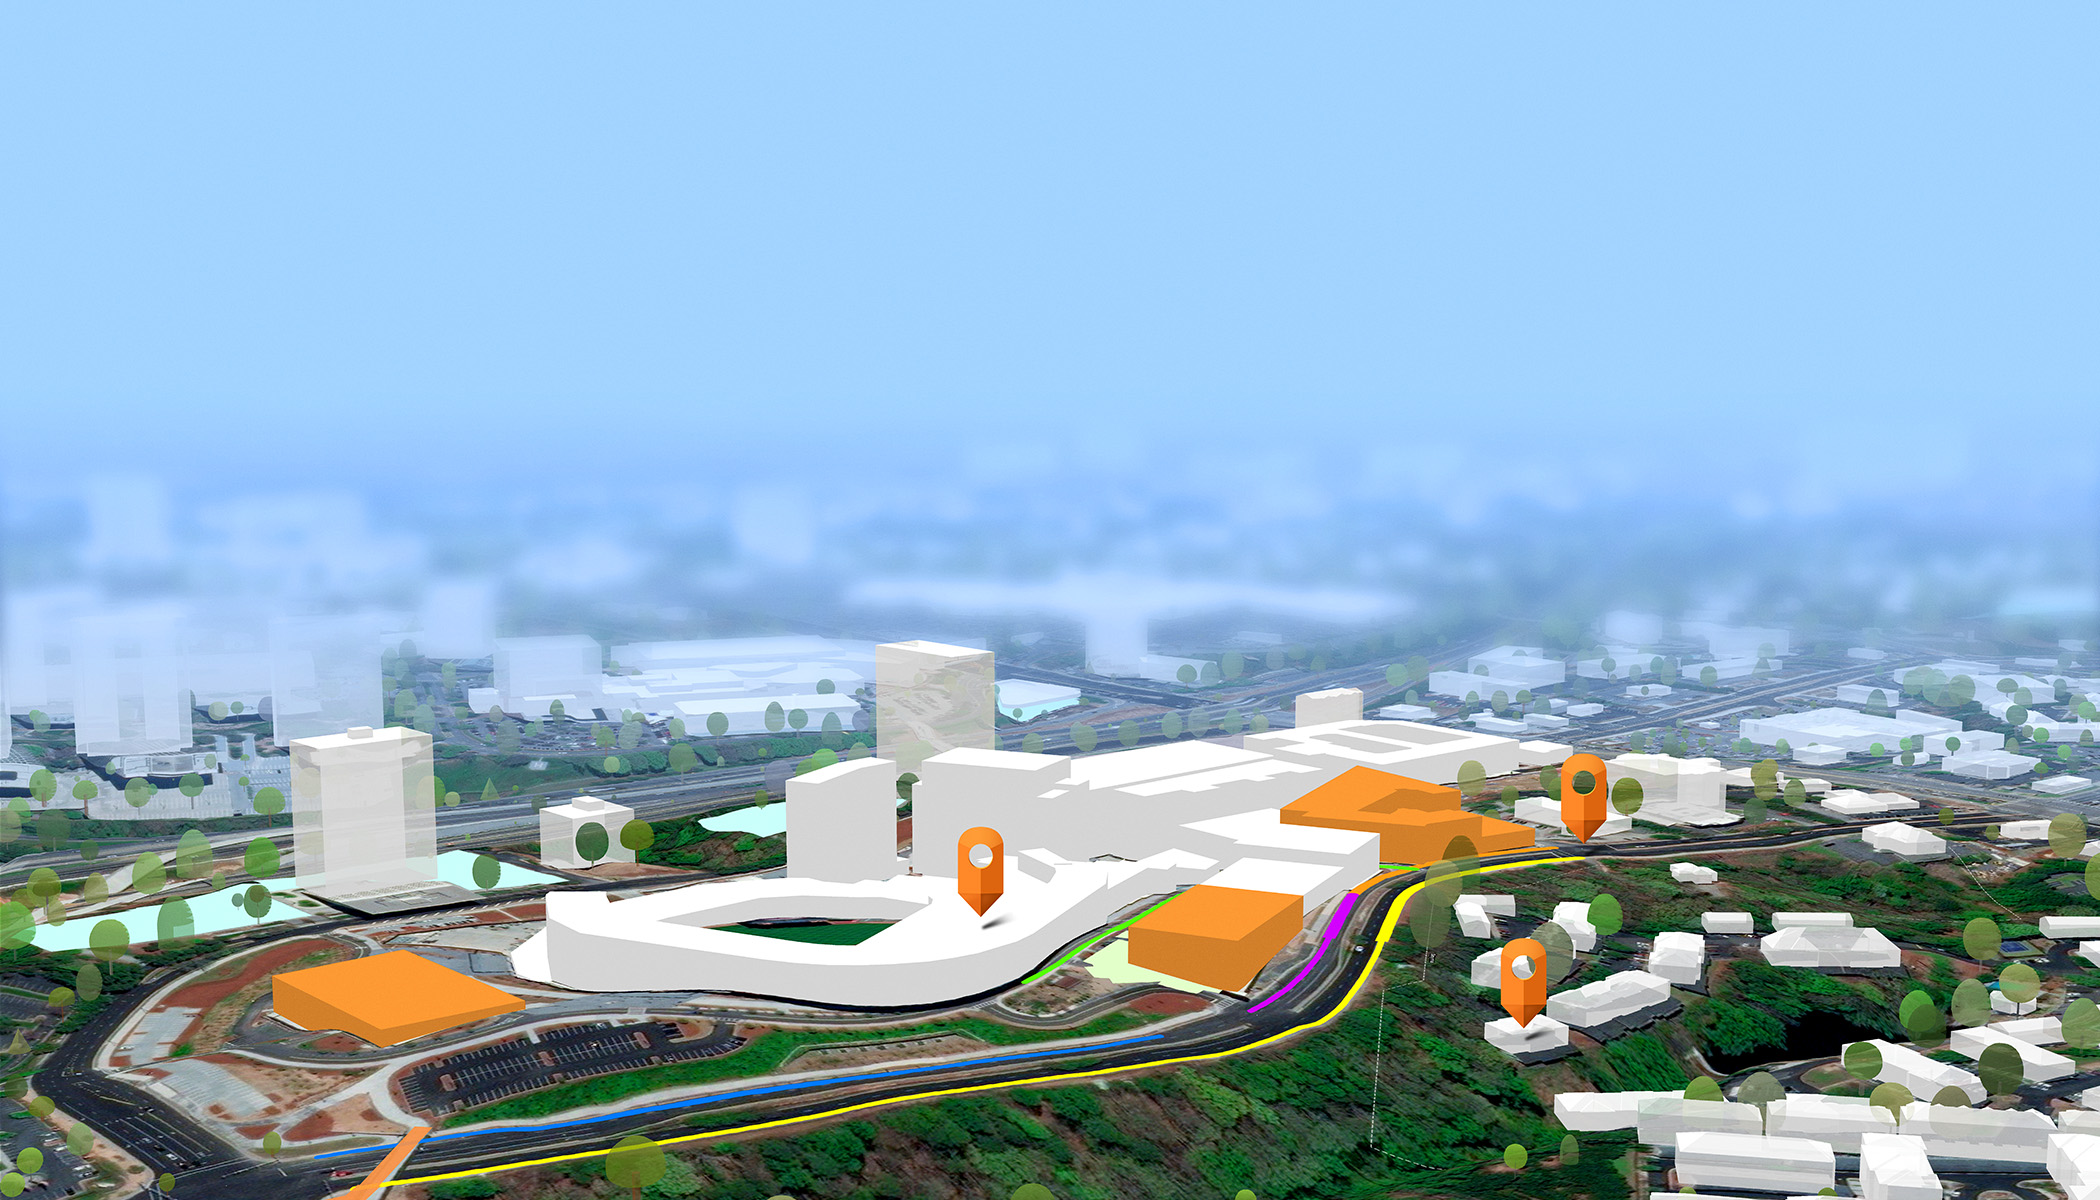 배경은 흐릿하게 처리하고 전경에는 흰색과 주황색 건물들과 3개의 주황색 탐색 핀 아이콘이 보이는 3D 도시 디자인